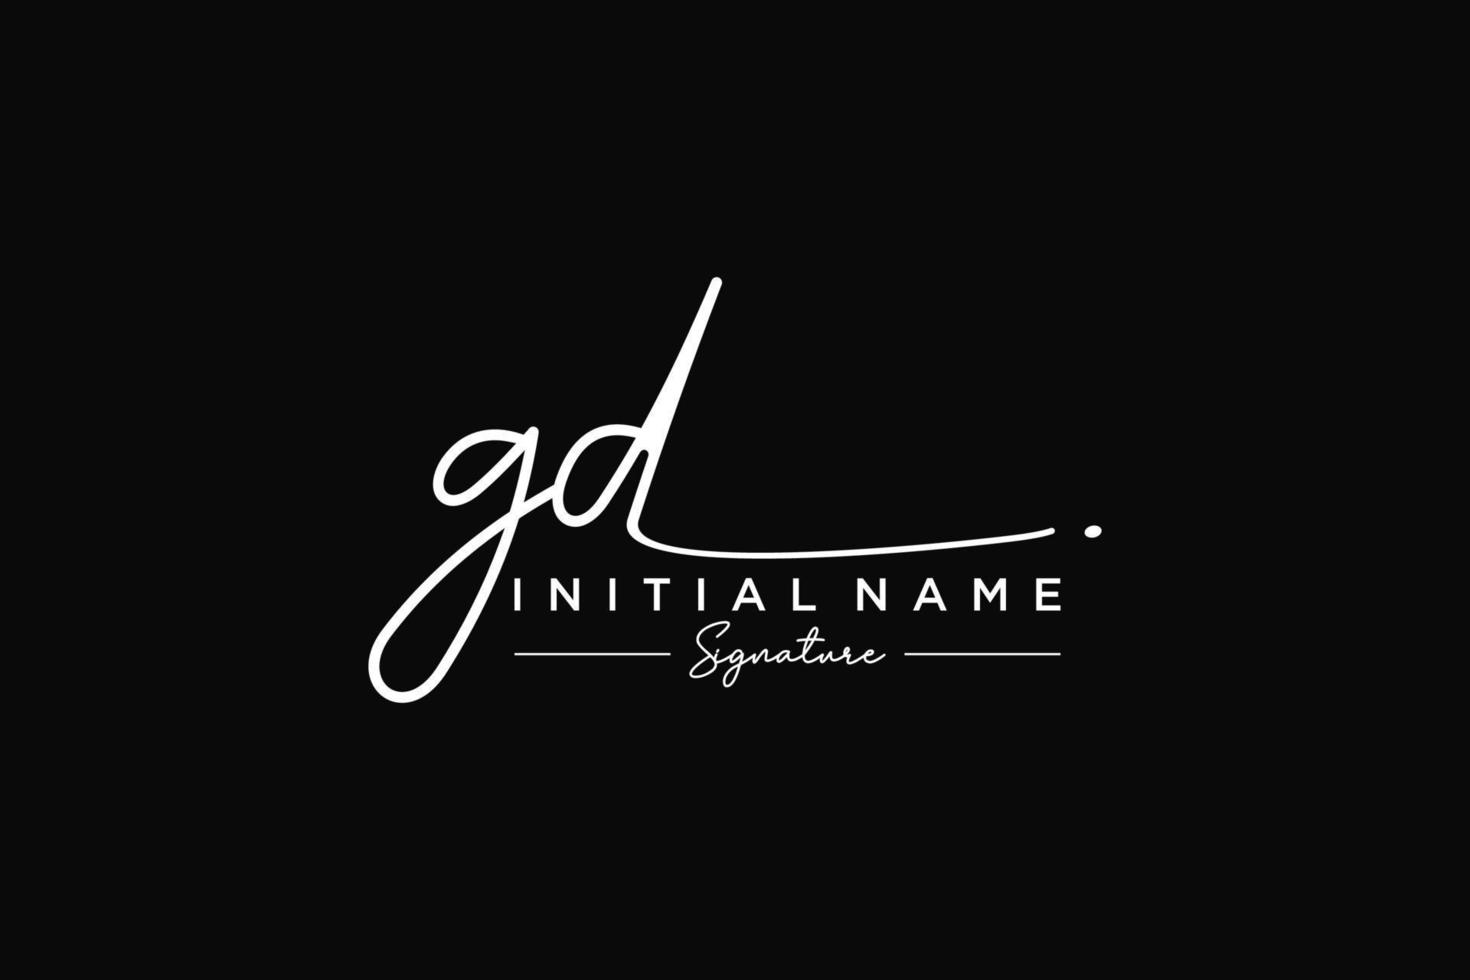 vector de plantilla de logotipo de firma gd inicial. ilustración de vector de letras de caligrafía dibujada a mano.